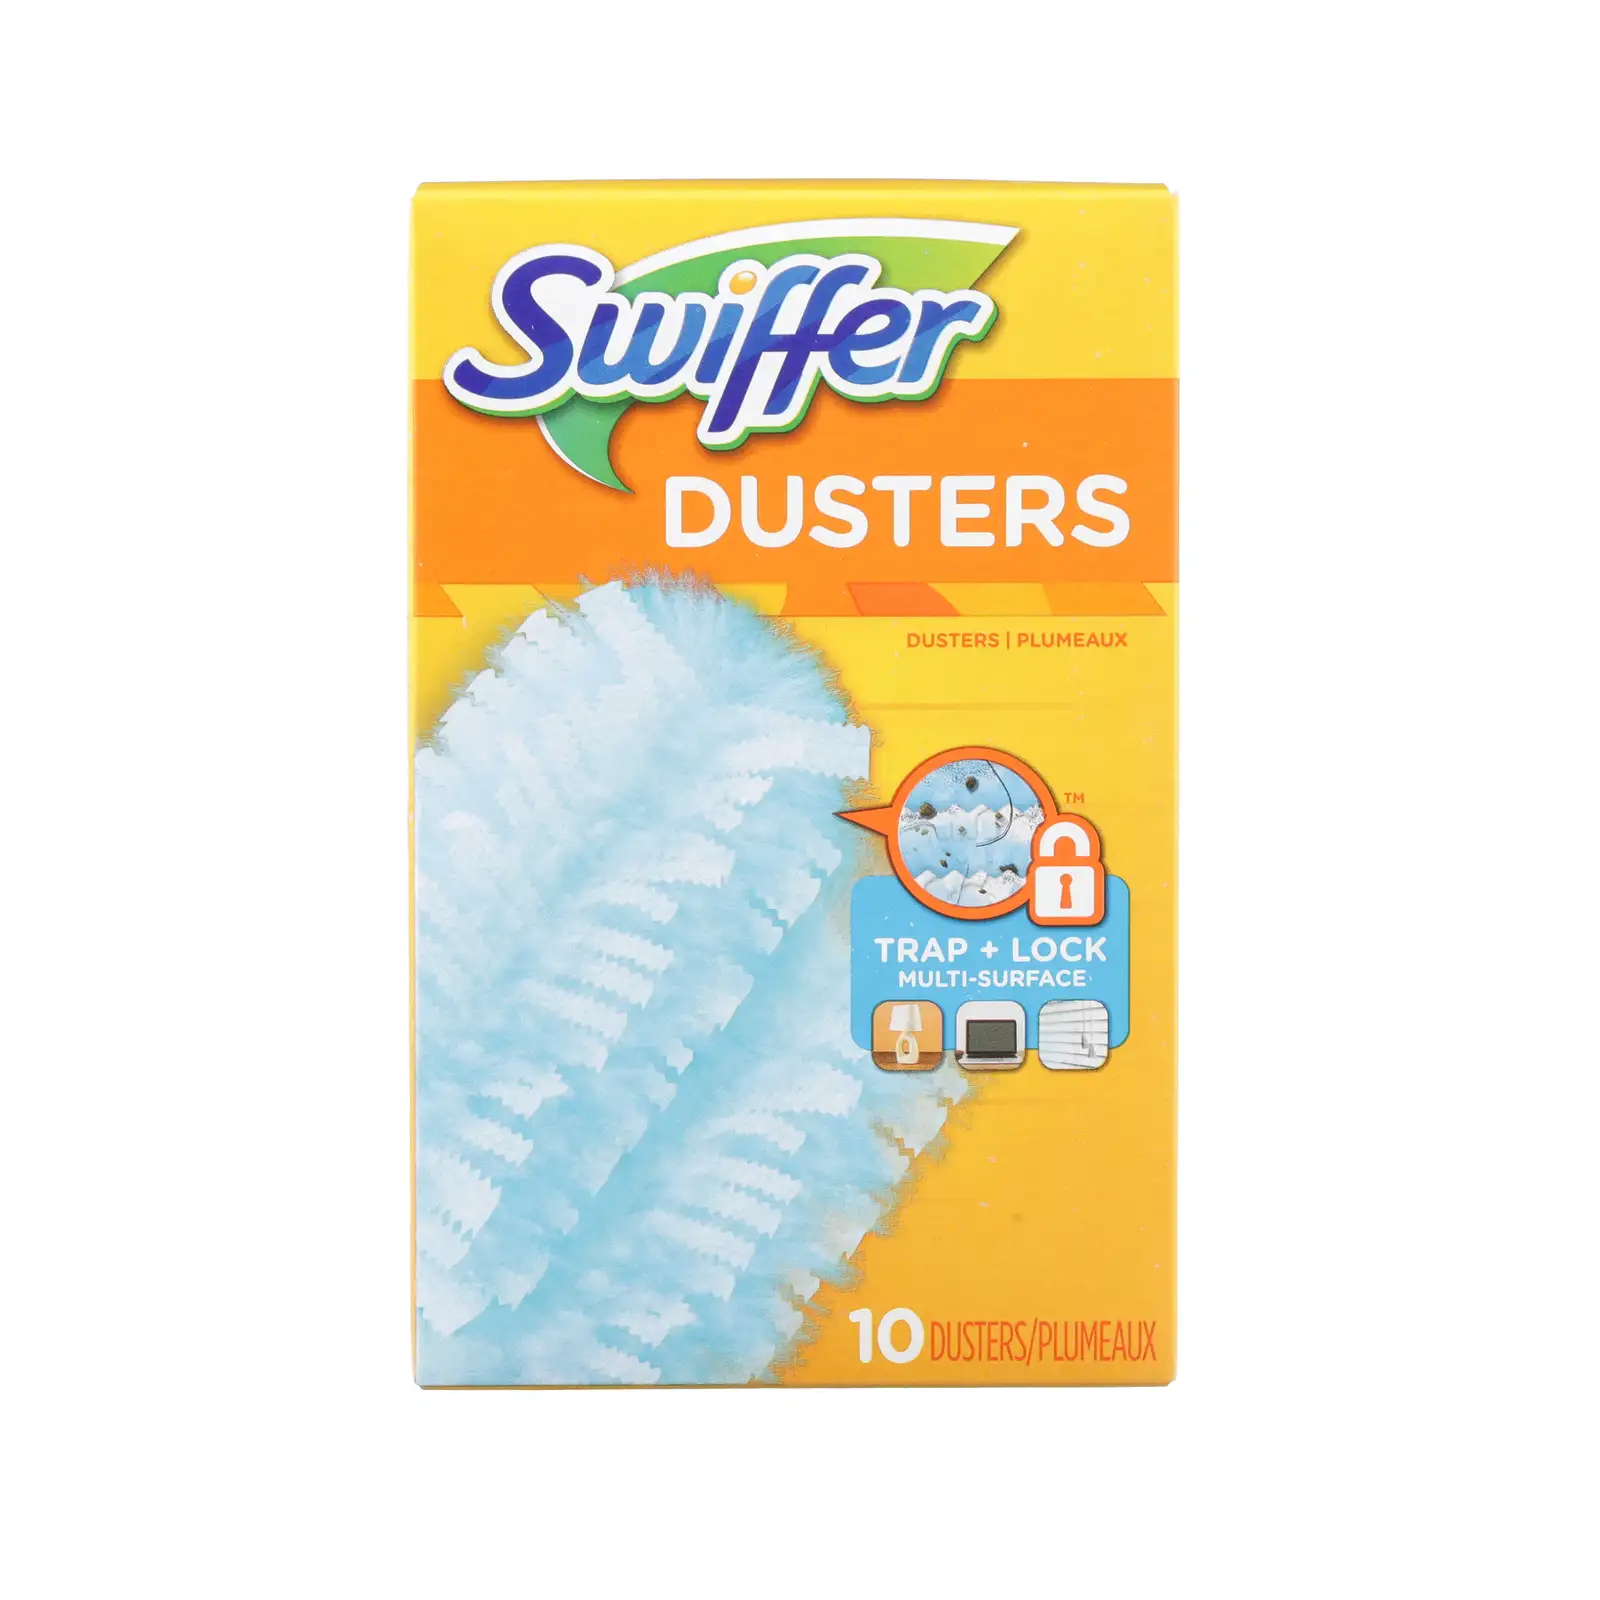 Swiffer Duster Refills – Pack of 10